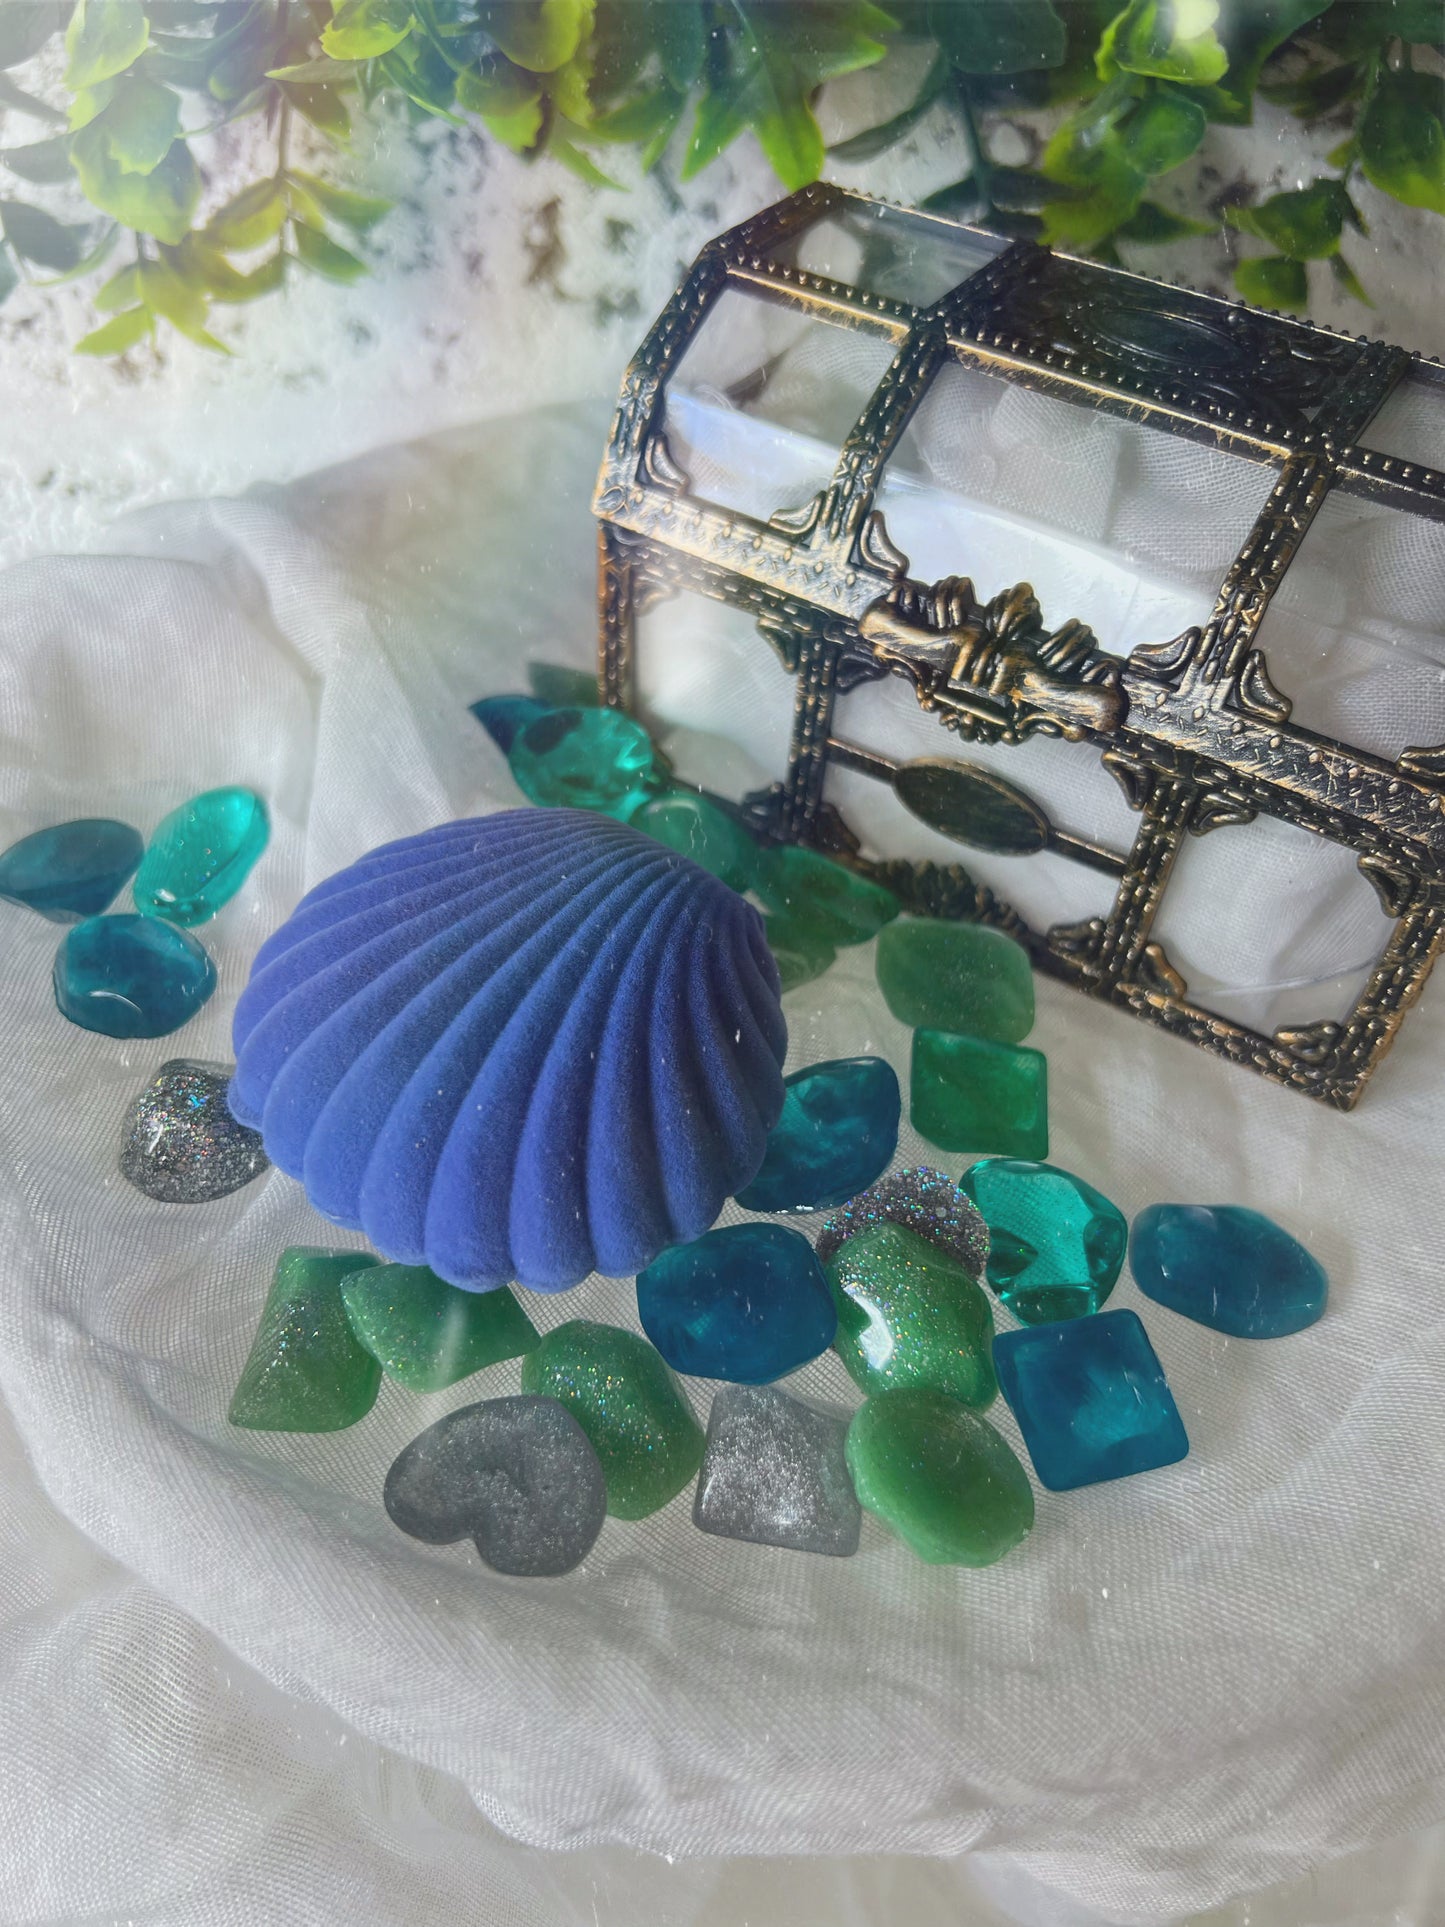 The blue mermaid shell